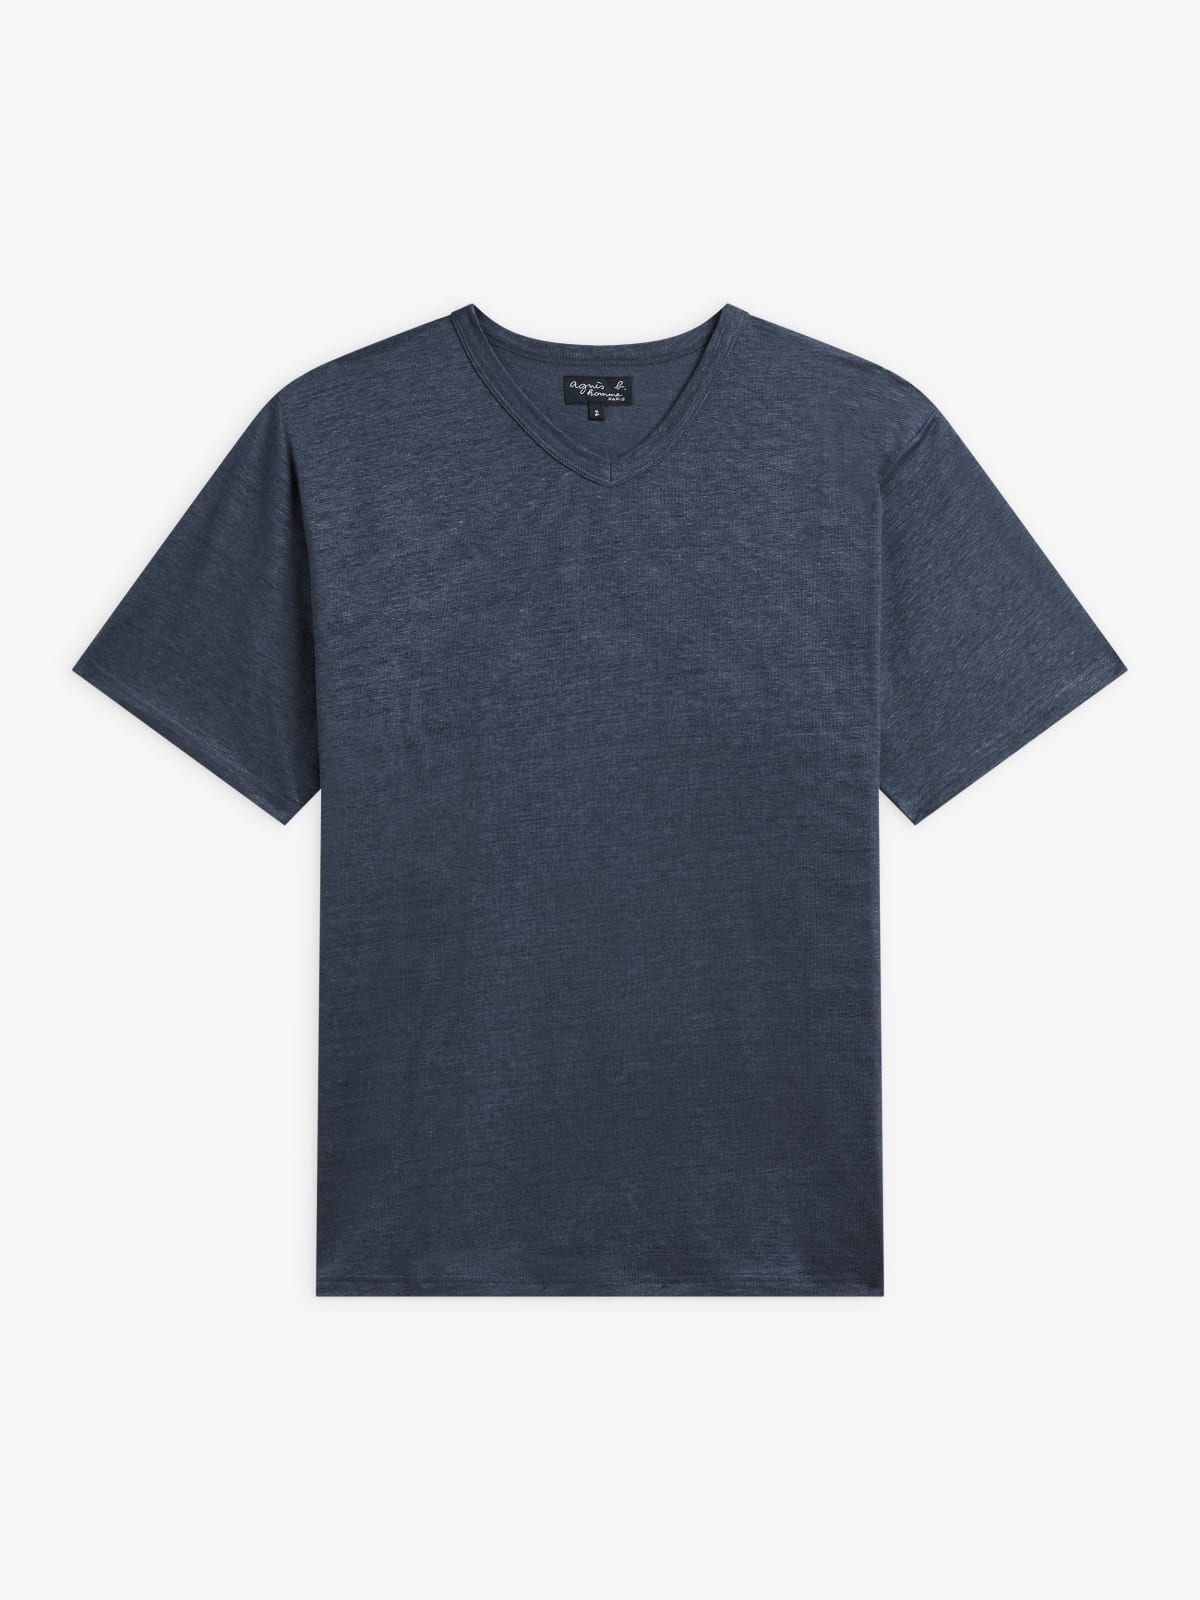 grey Victor linen jersey t-shirt